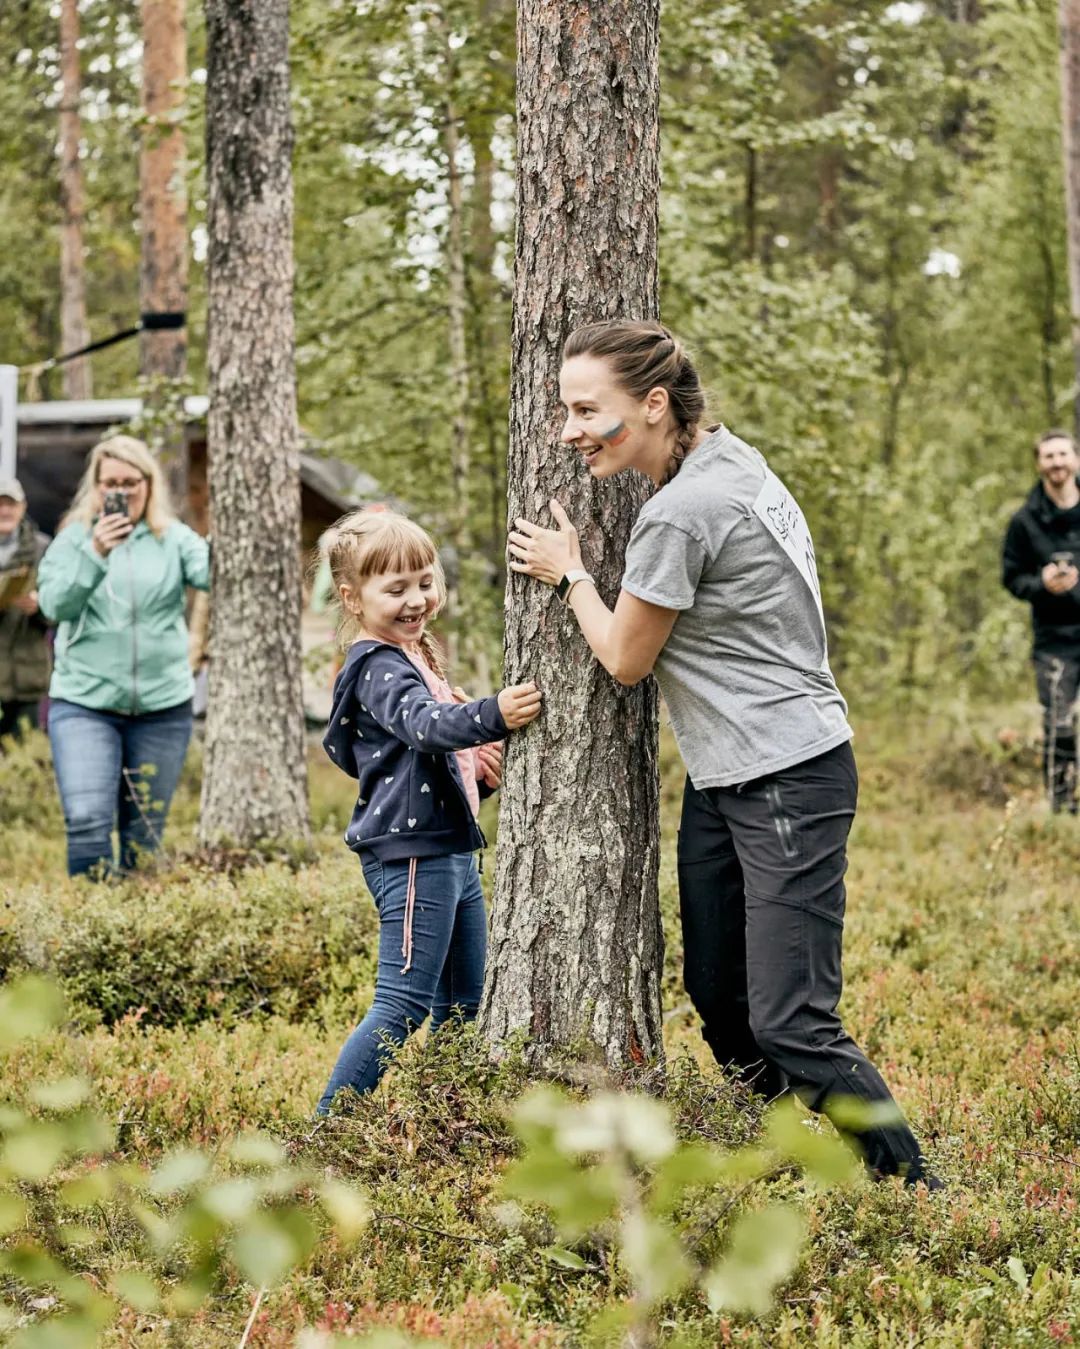 Cuộc thi ôm cây vừa là trò chơi vui nhộn, vừa mang ý nghĩa đóng góp vào việc bảo vệ môi trường. Hãy cùng đón xem hình ảnh những người tham gia cuộc thi trẻ trung và nhiệt huyết ôm chặt cây để góp phần bảo tồn thiên nhiên.